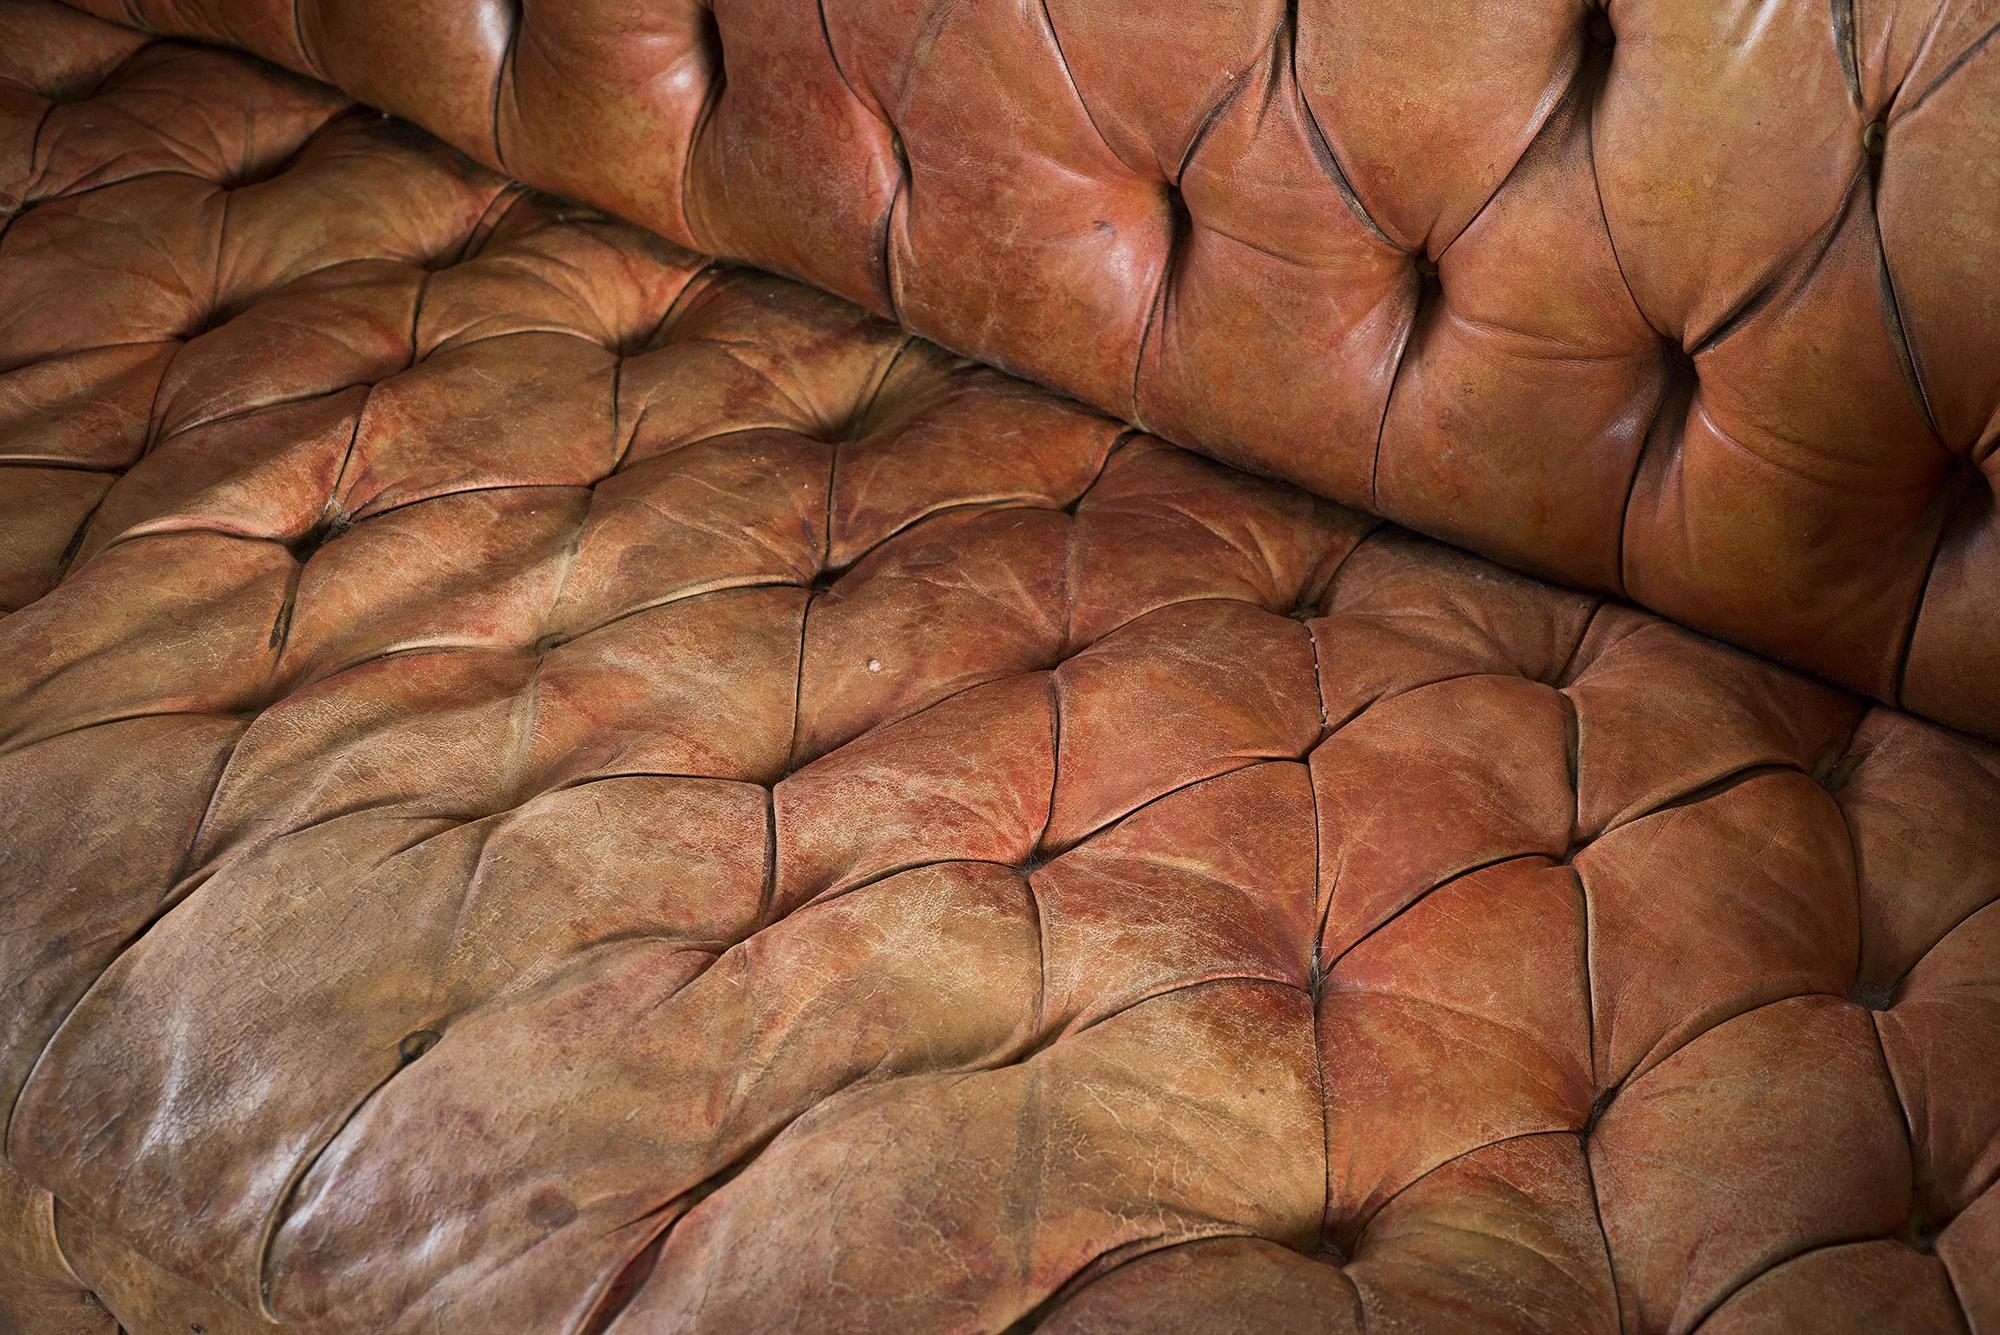 english leather sofa